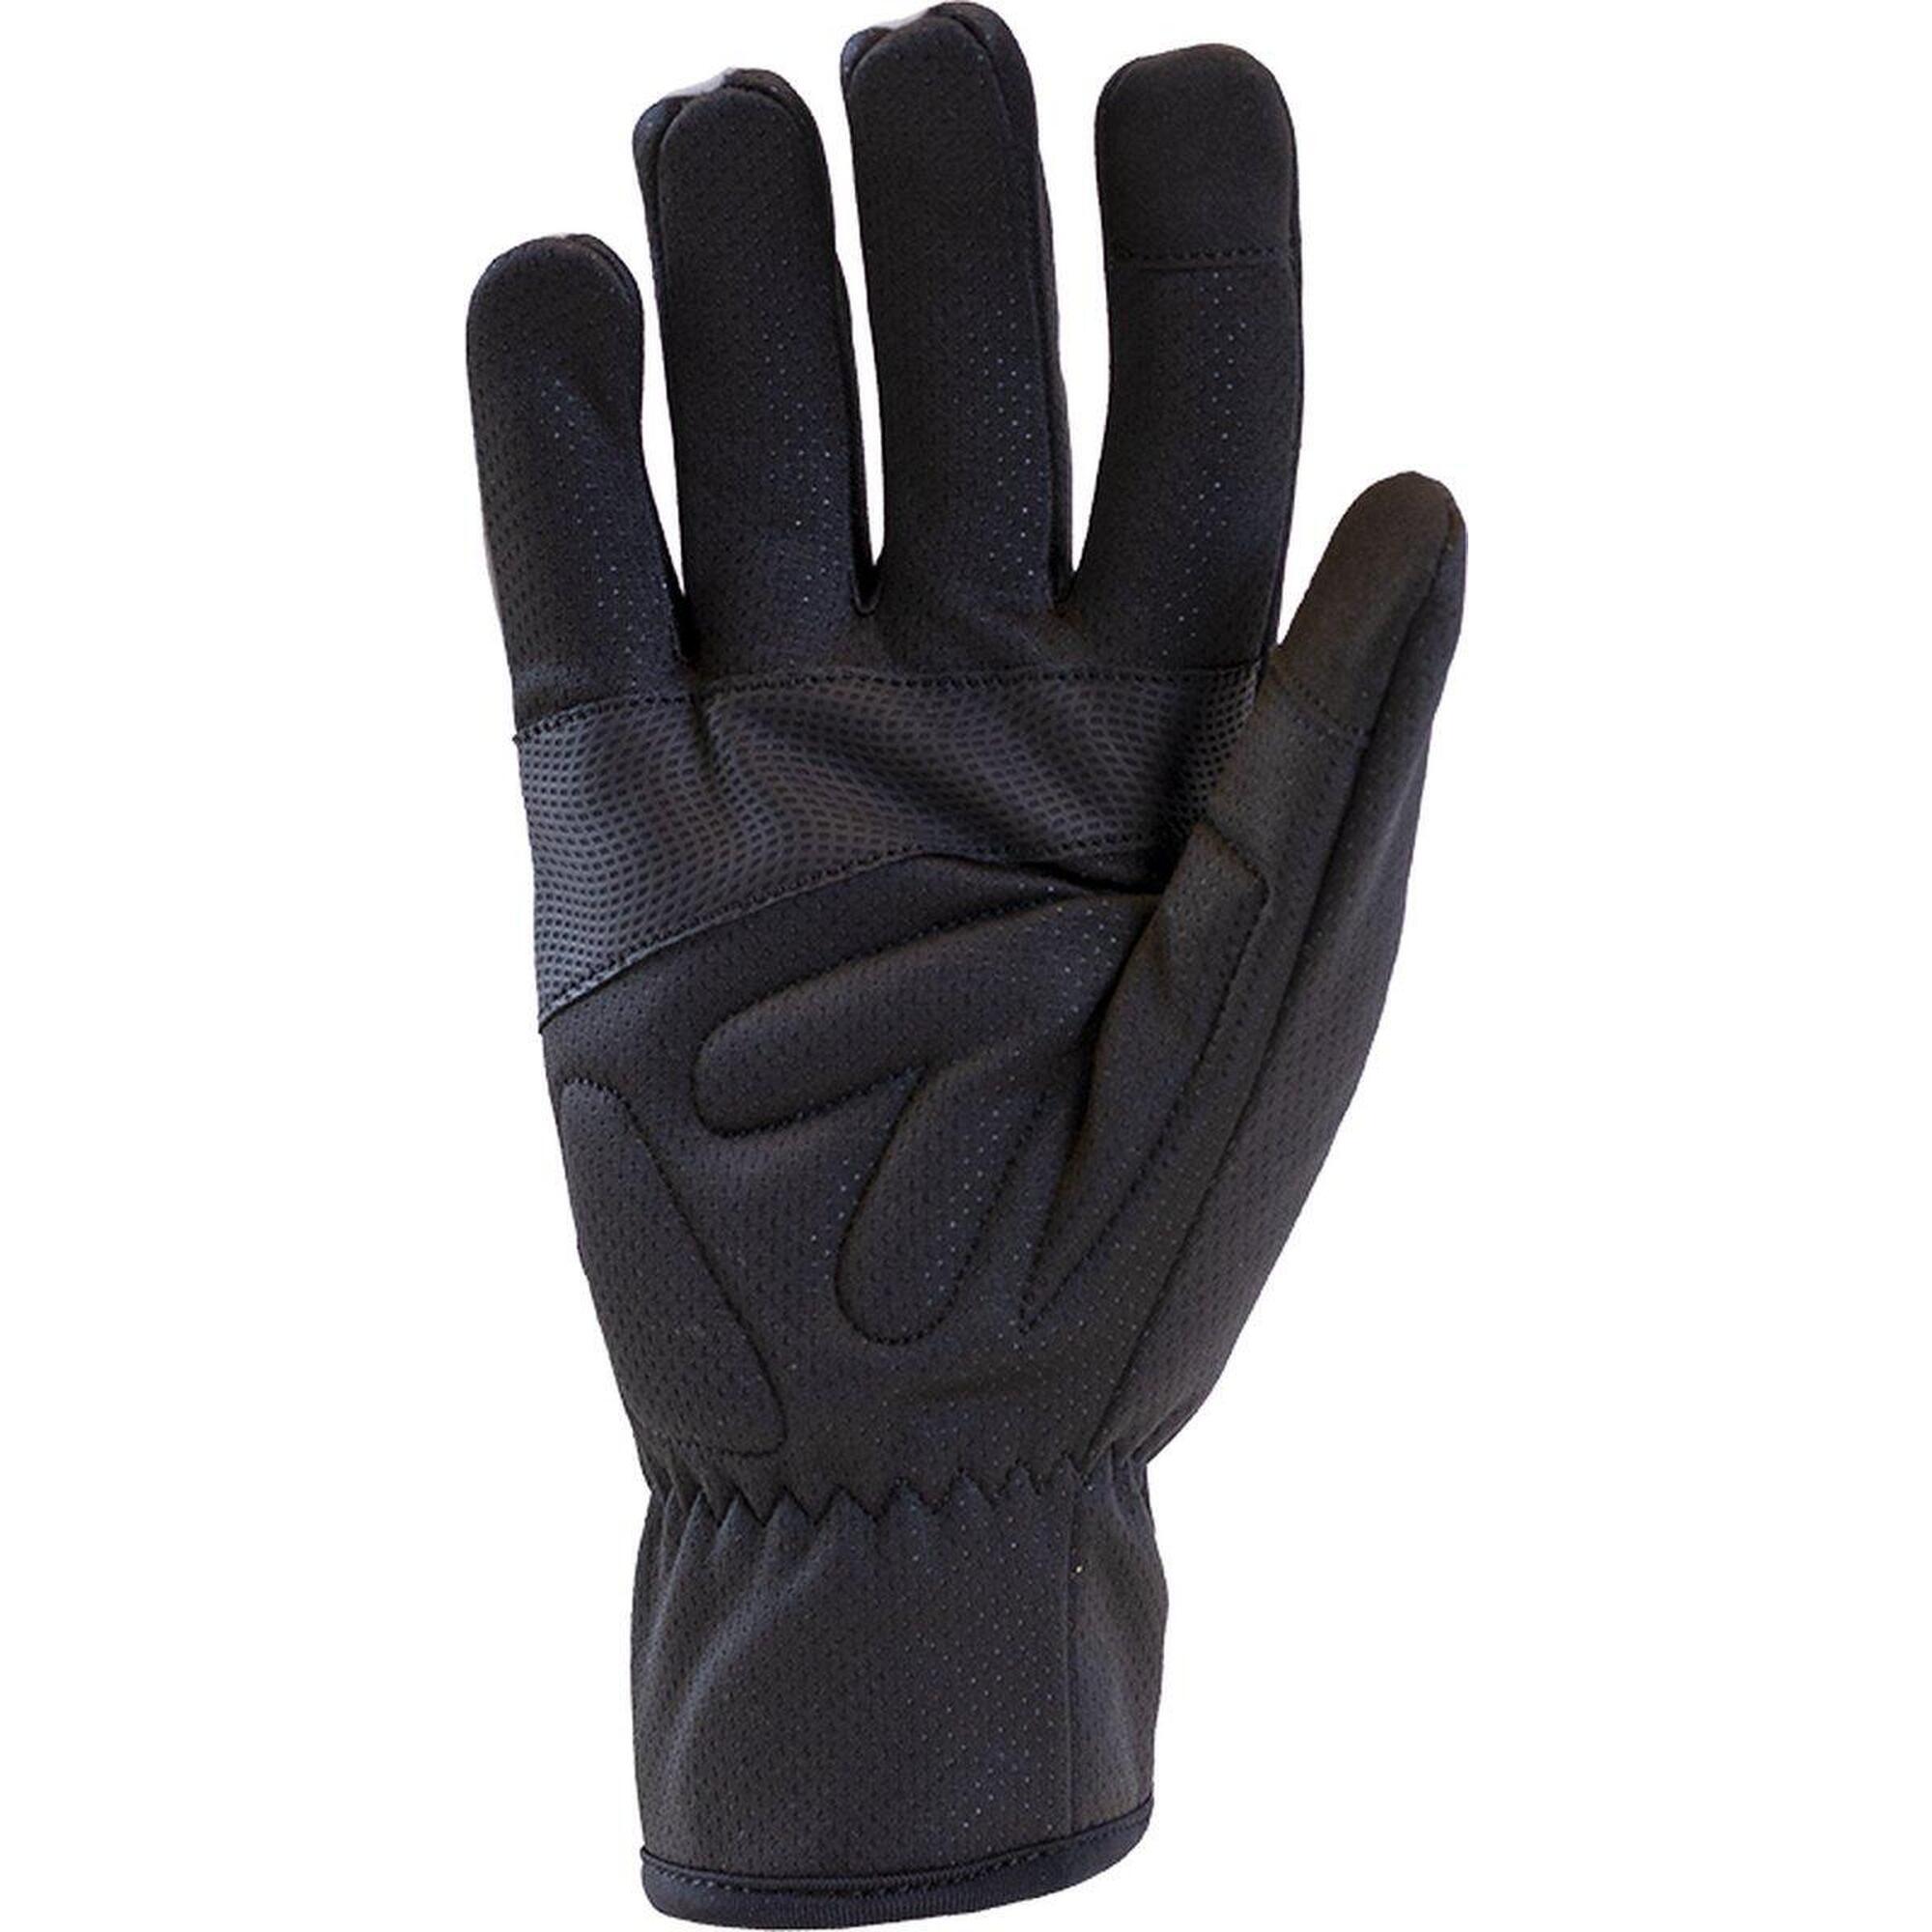 Fietshandschoenen in fluo winddicht maat M - Cycle Gloves 2.0 full reflective